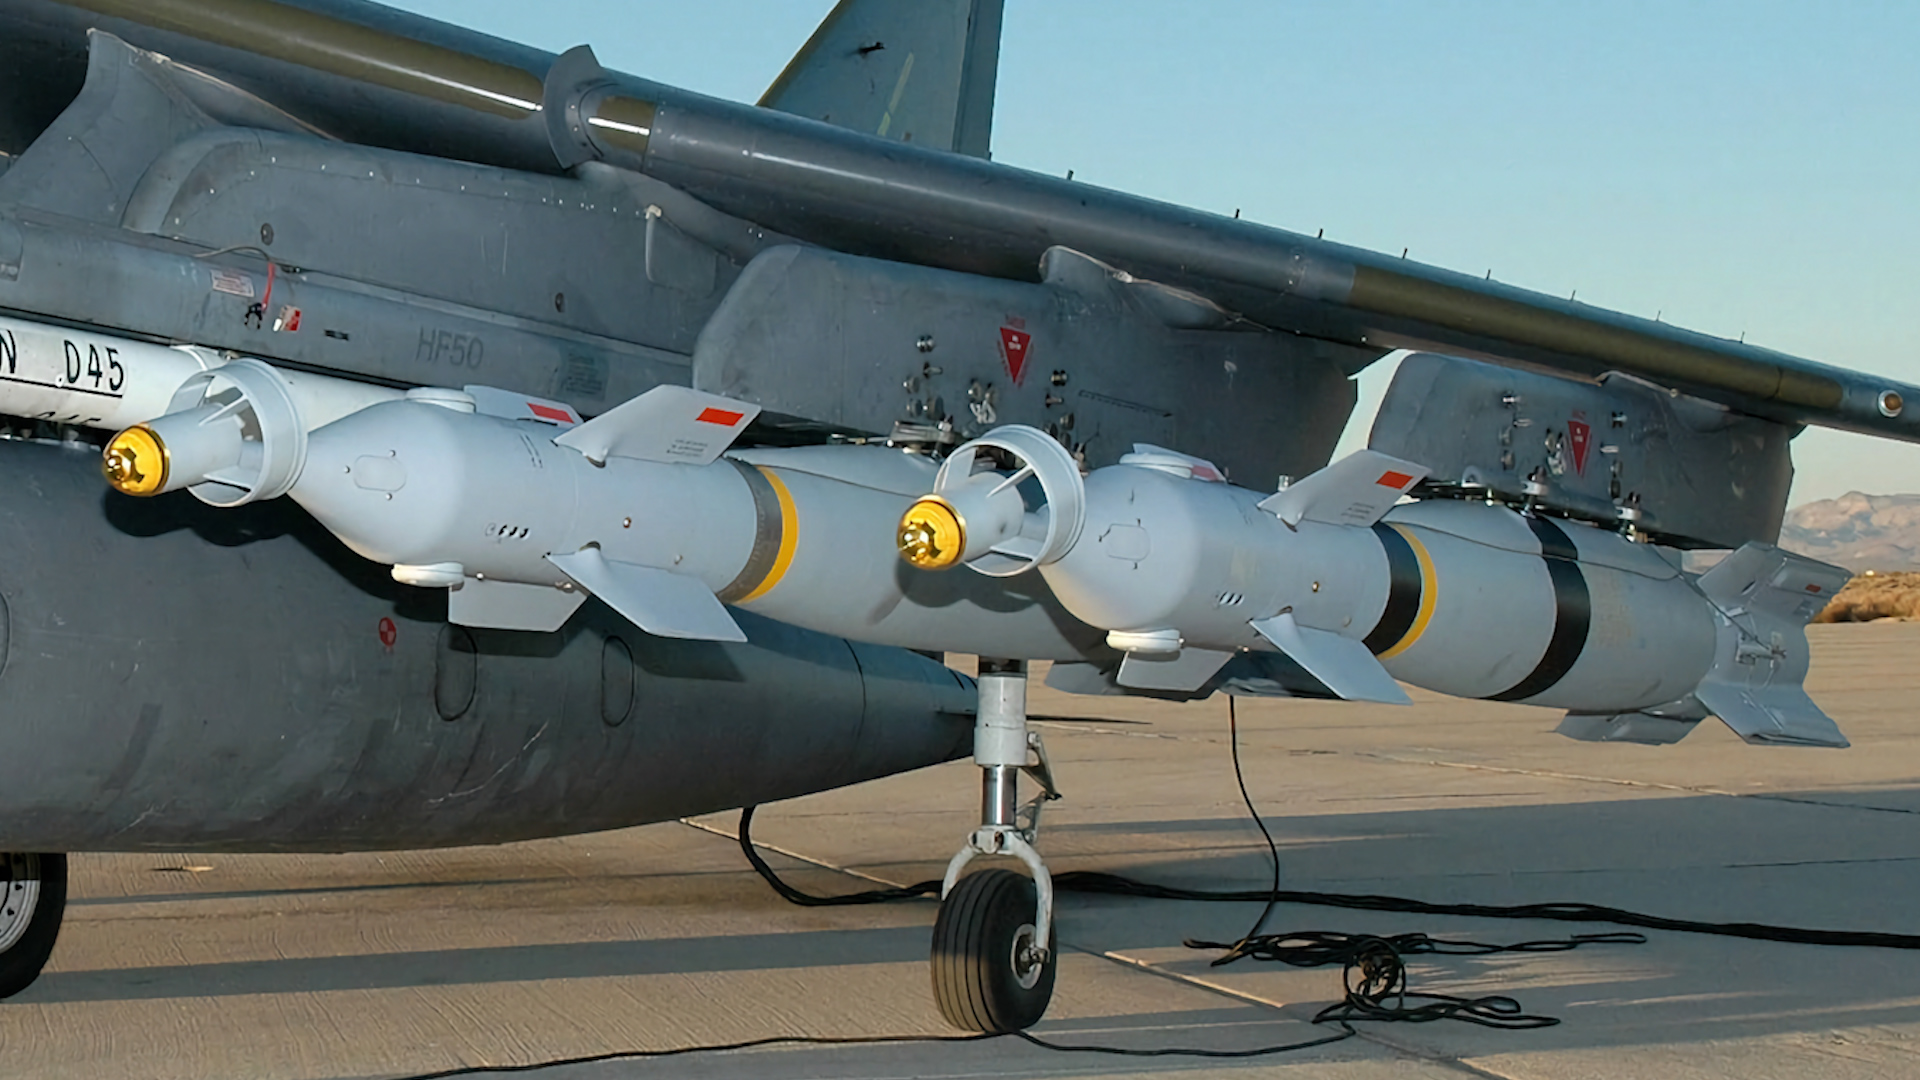 Bom dẫn đường chính xác bằng laser Paveway IV bên dưới cánh của chiếc máy bay Harrier GR9 trước khi xuất kích ở Afghanistan